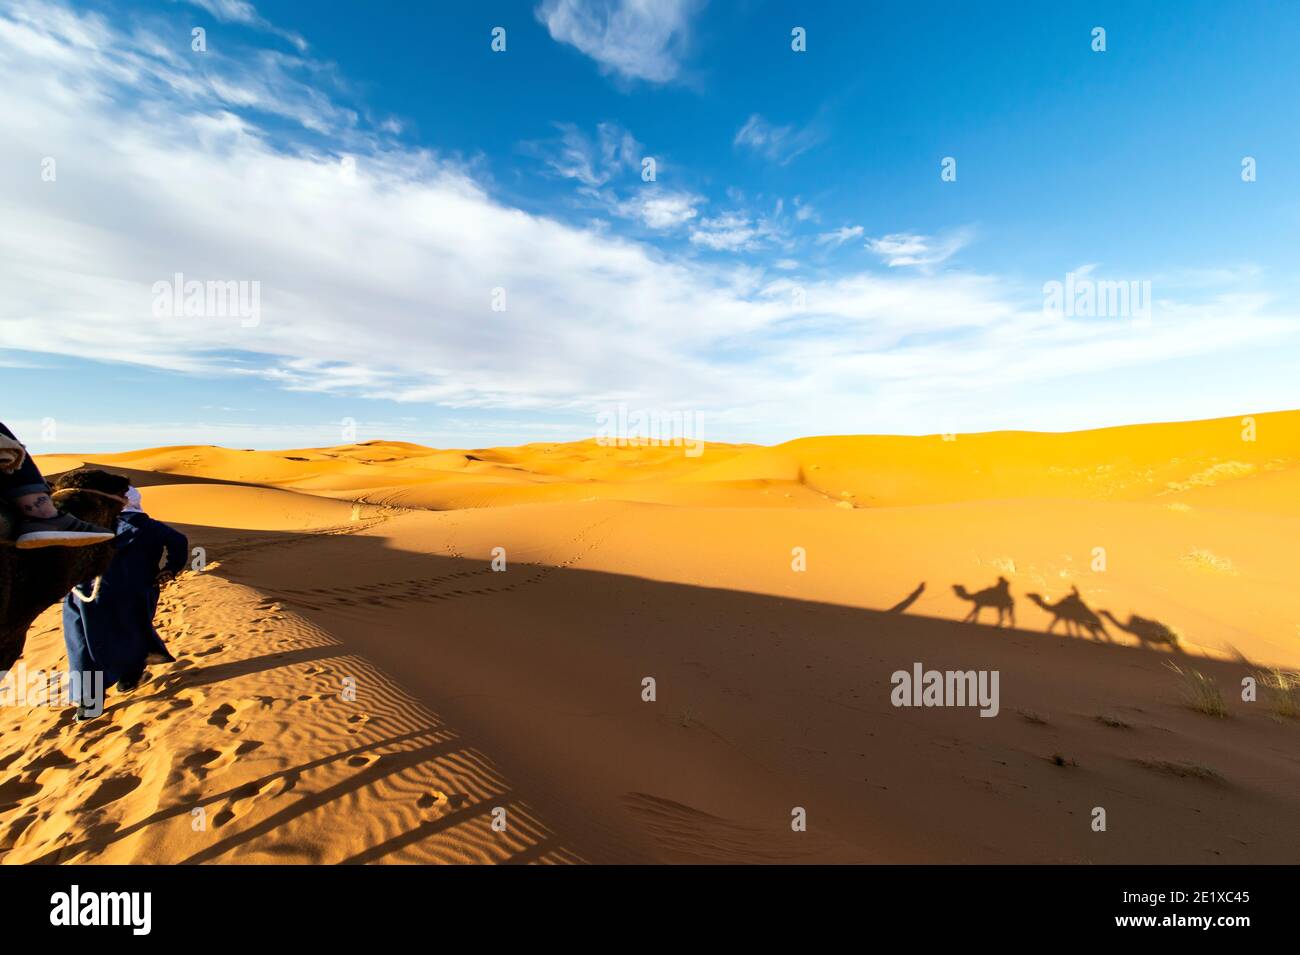 (Enfoque selectivo) impresionante vista de la silueta de dos personas montando camellos en las dunas de arena en Merzouga, Marruecos. Foto de stock